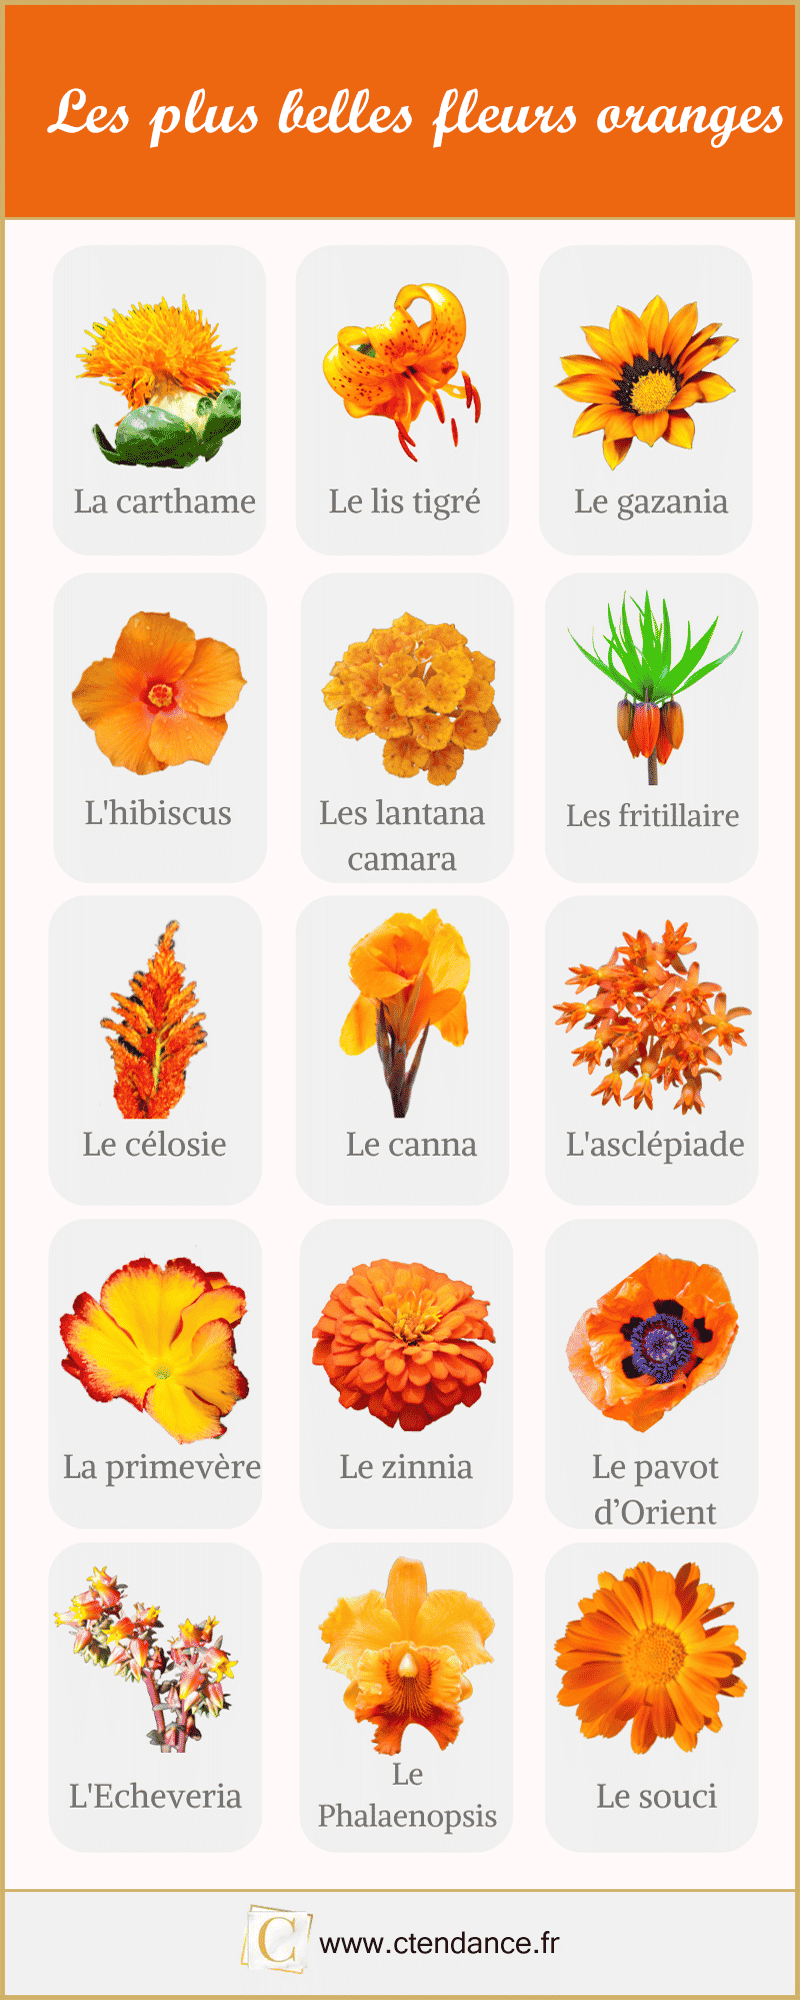 Les plus belles fleurs oranges en image